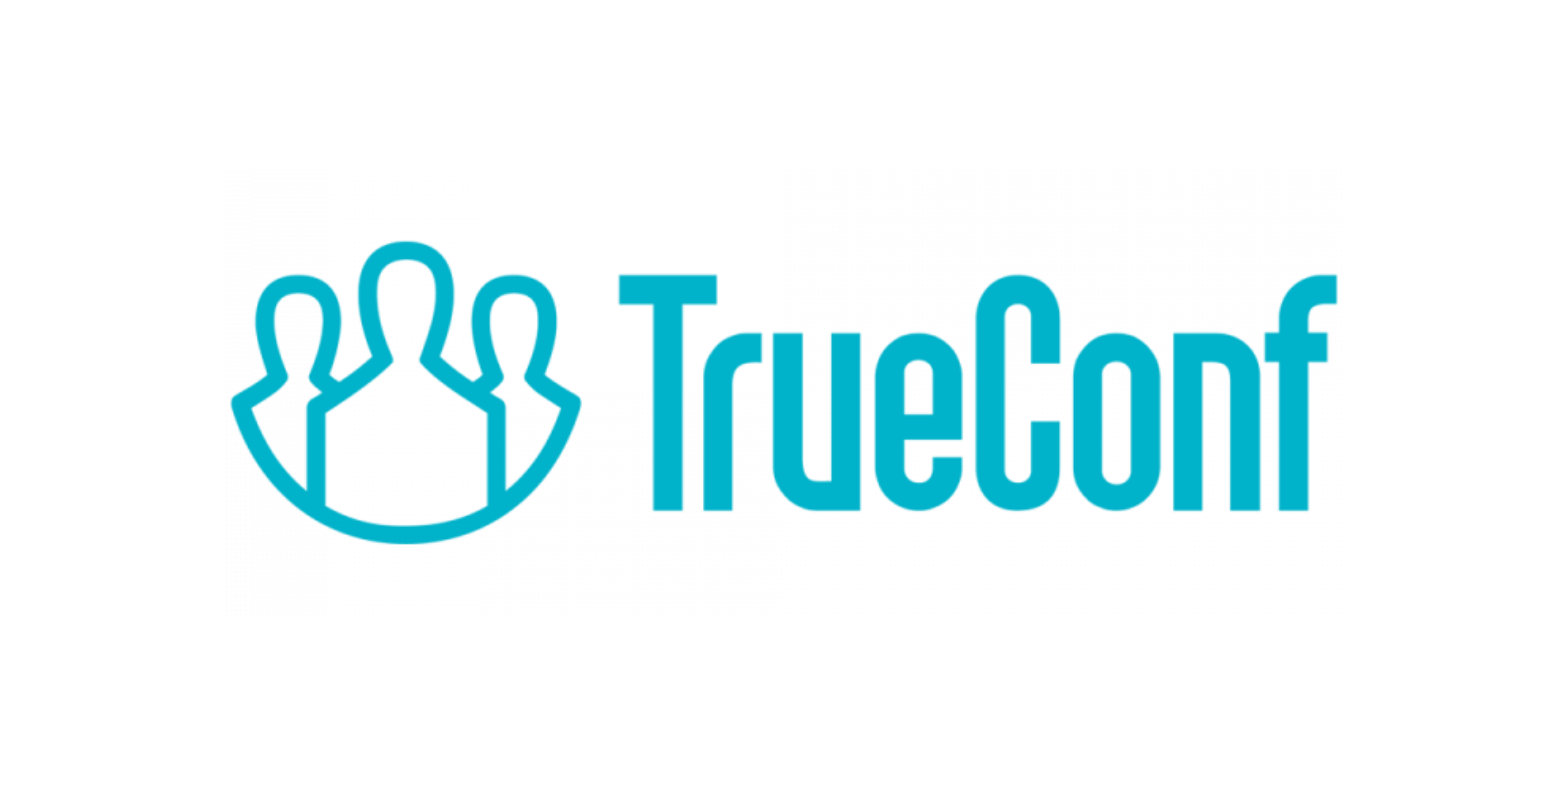 TrueConf Server Техническая поддержка на 1 год расширенная 50-99 онлайн-пользователей